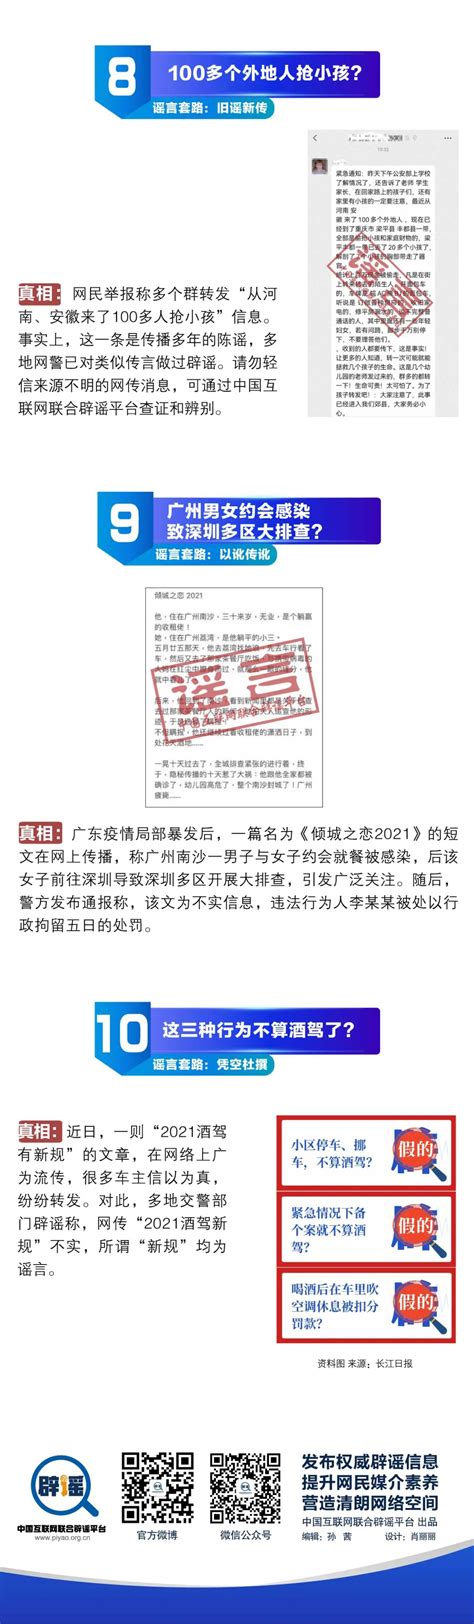 山西省晋城市2021年消费维权十大热点-中国质量新闻网